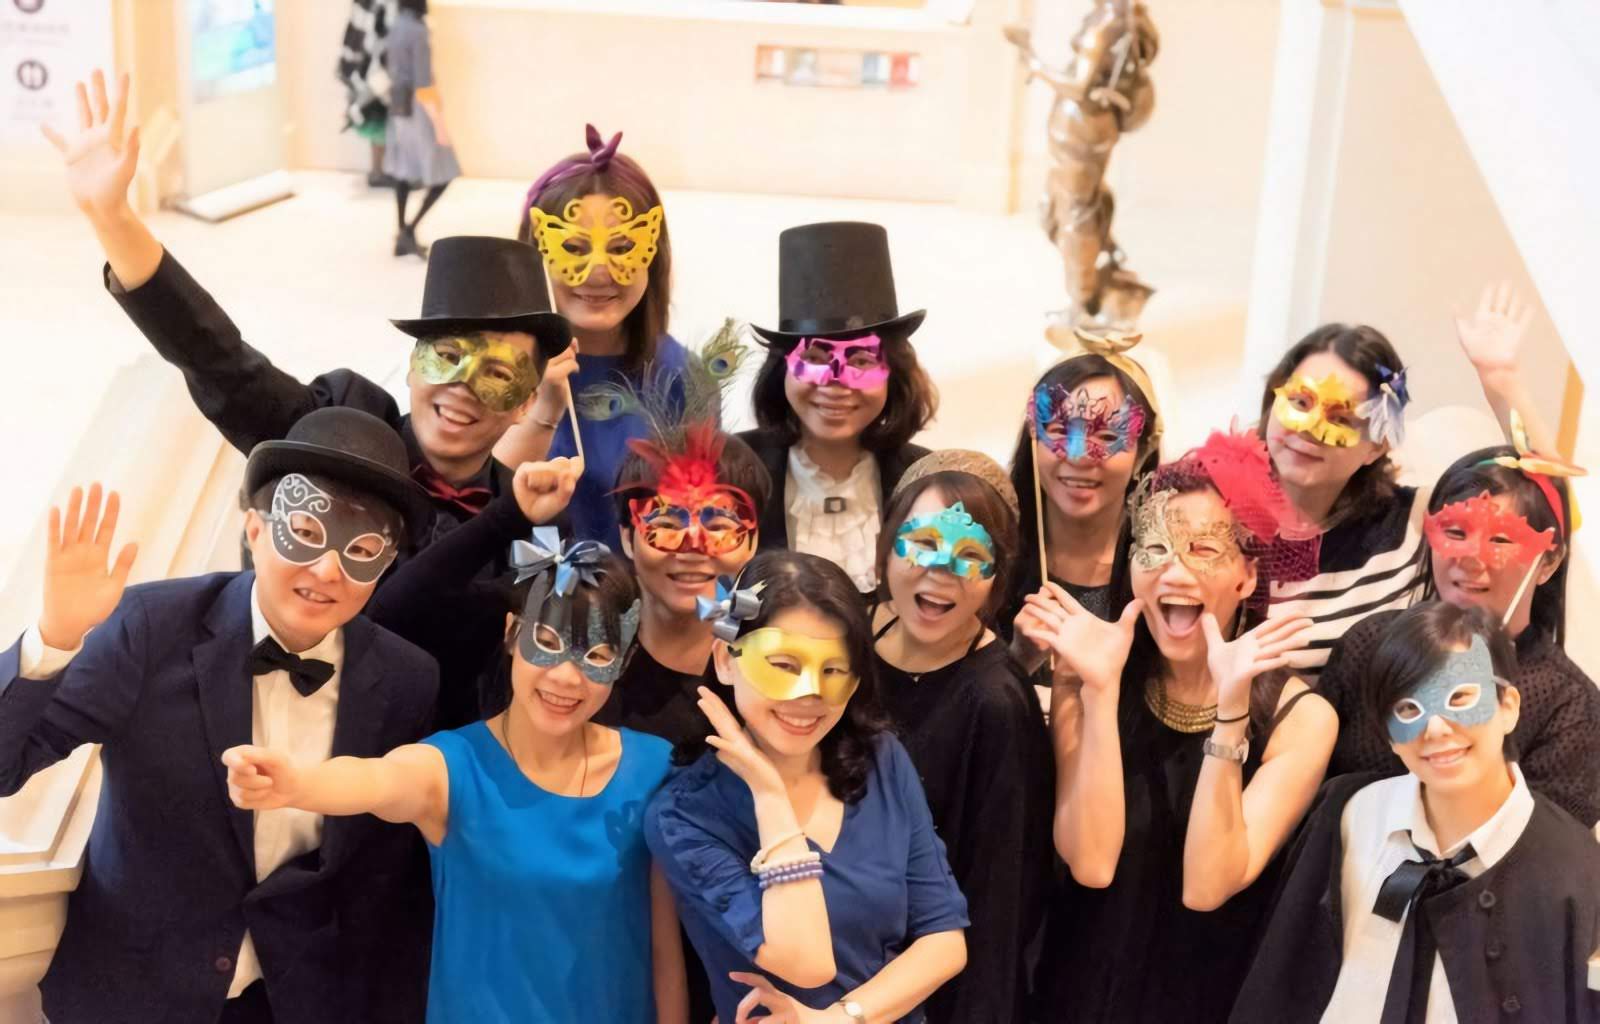 [活動] 2019奇美博物館「聖誕週末趴」又來囉！ 以「化裝舞會」為主題邀您大玩造型、面具秀、熱情共舞